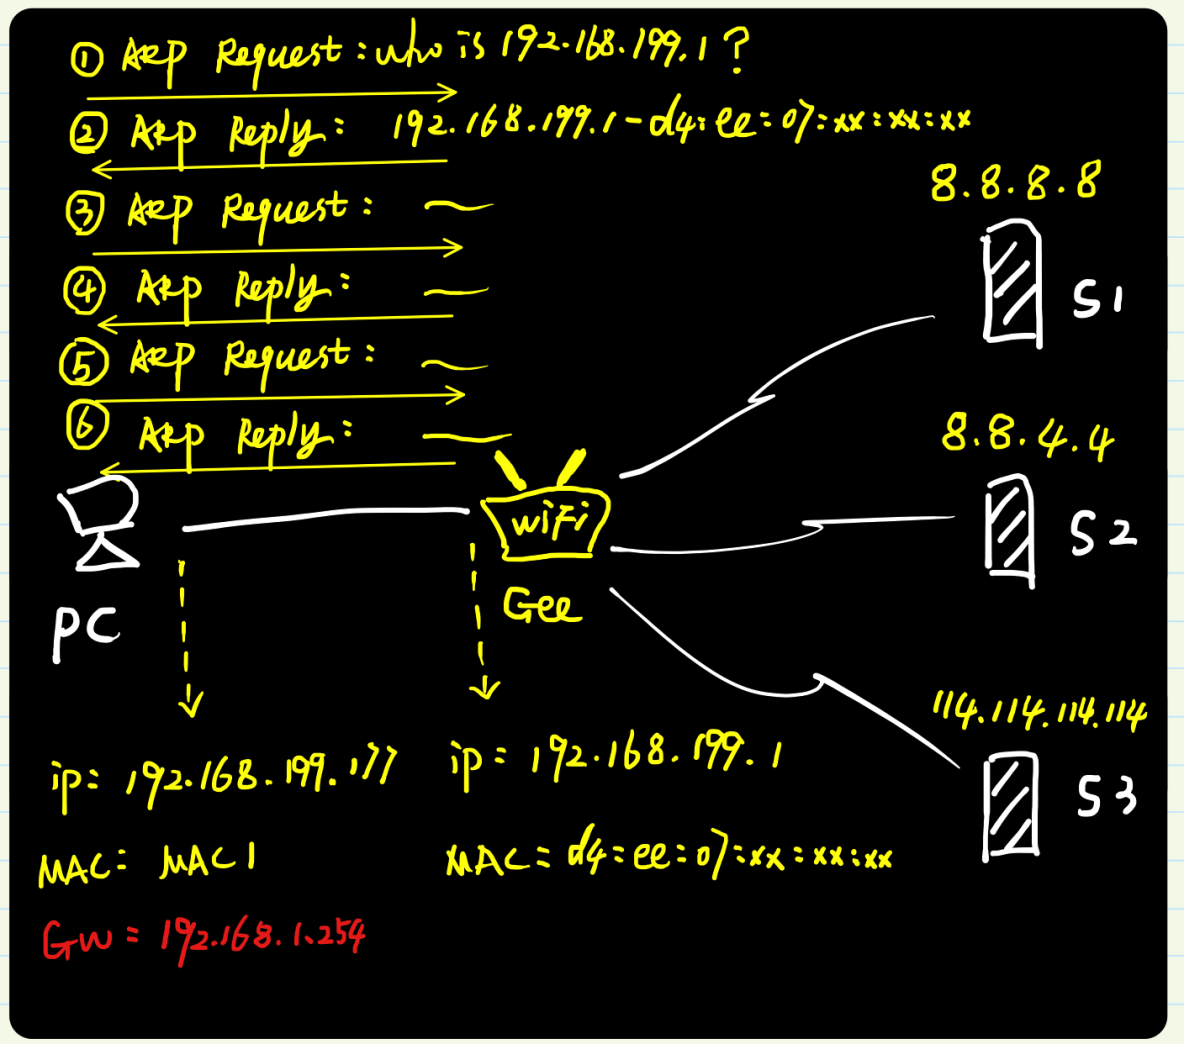 图解ARP协议（四）代理ARP原理与实践（“善意的欺骗”）_ARP协议_11